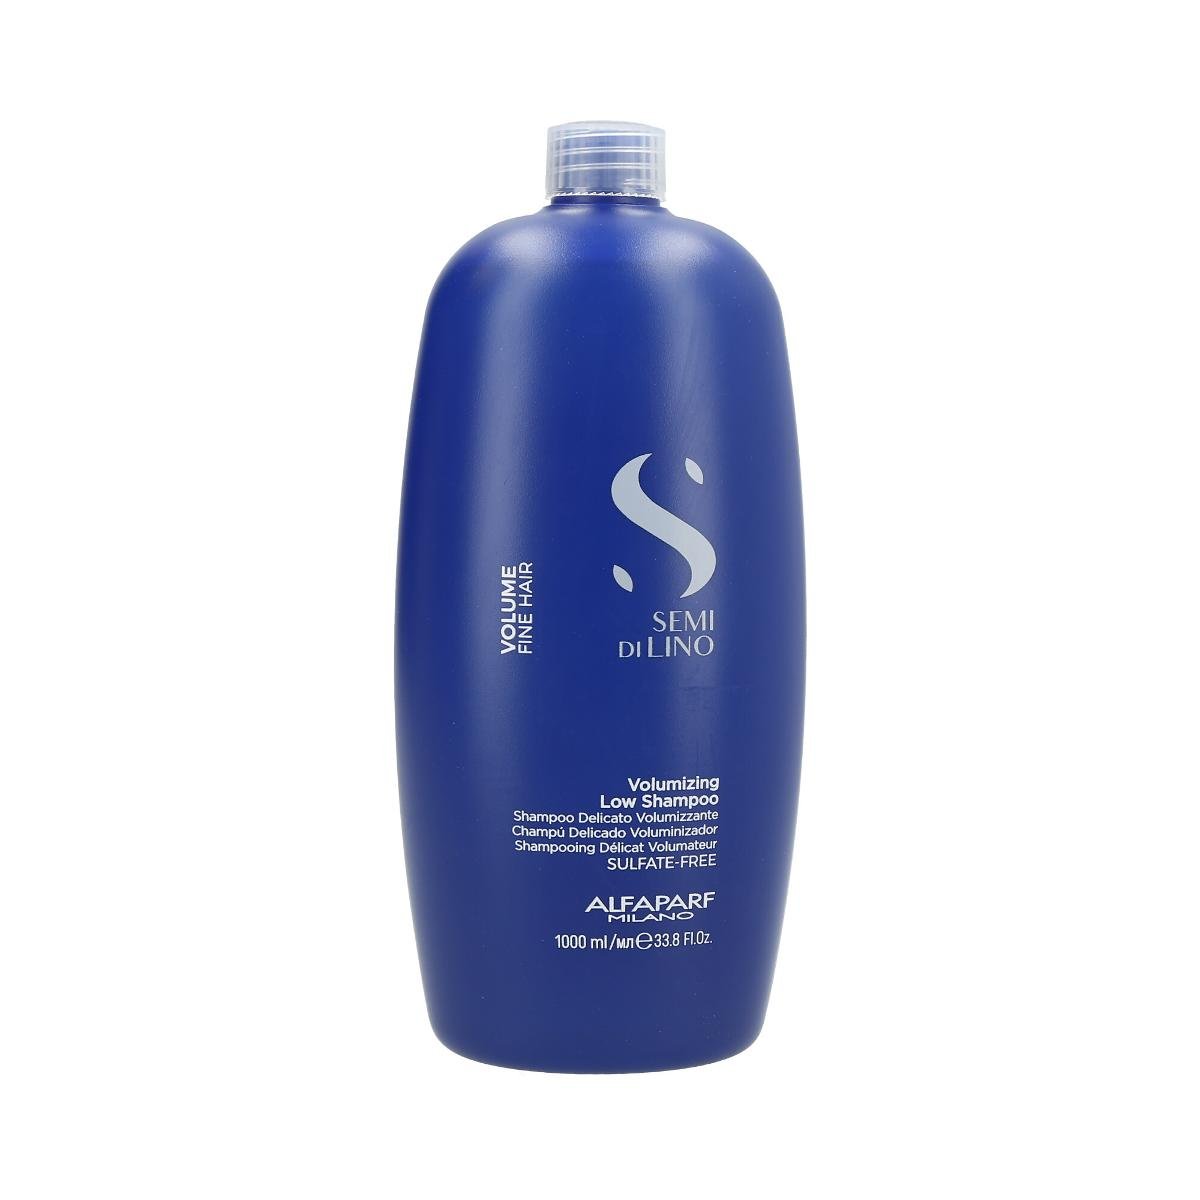 Alfaparf Volume delikatny szampon dodający objętości włosom cienkim i delikatnym 1000ml 3100